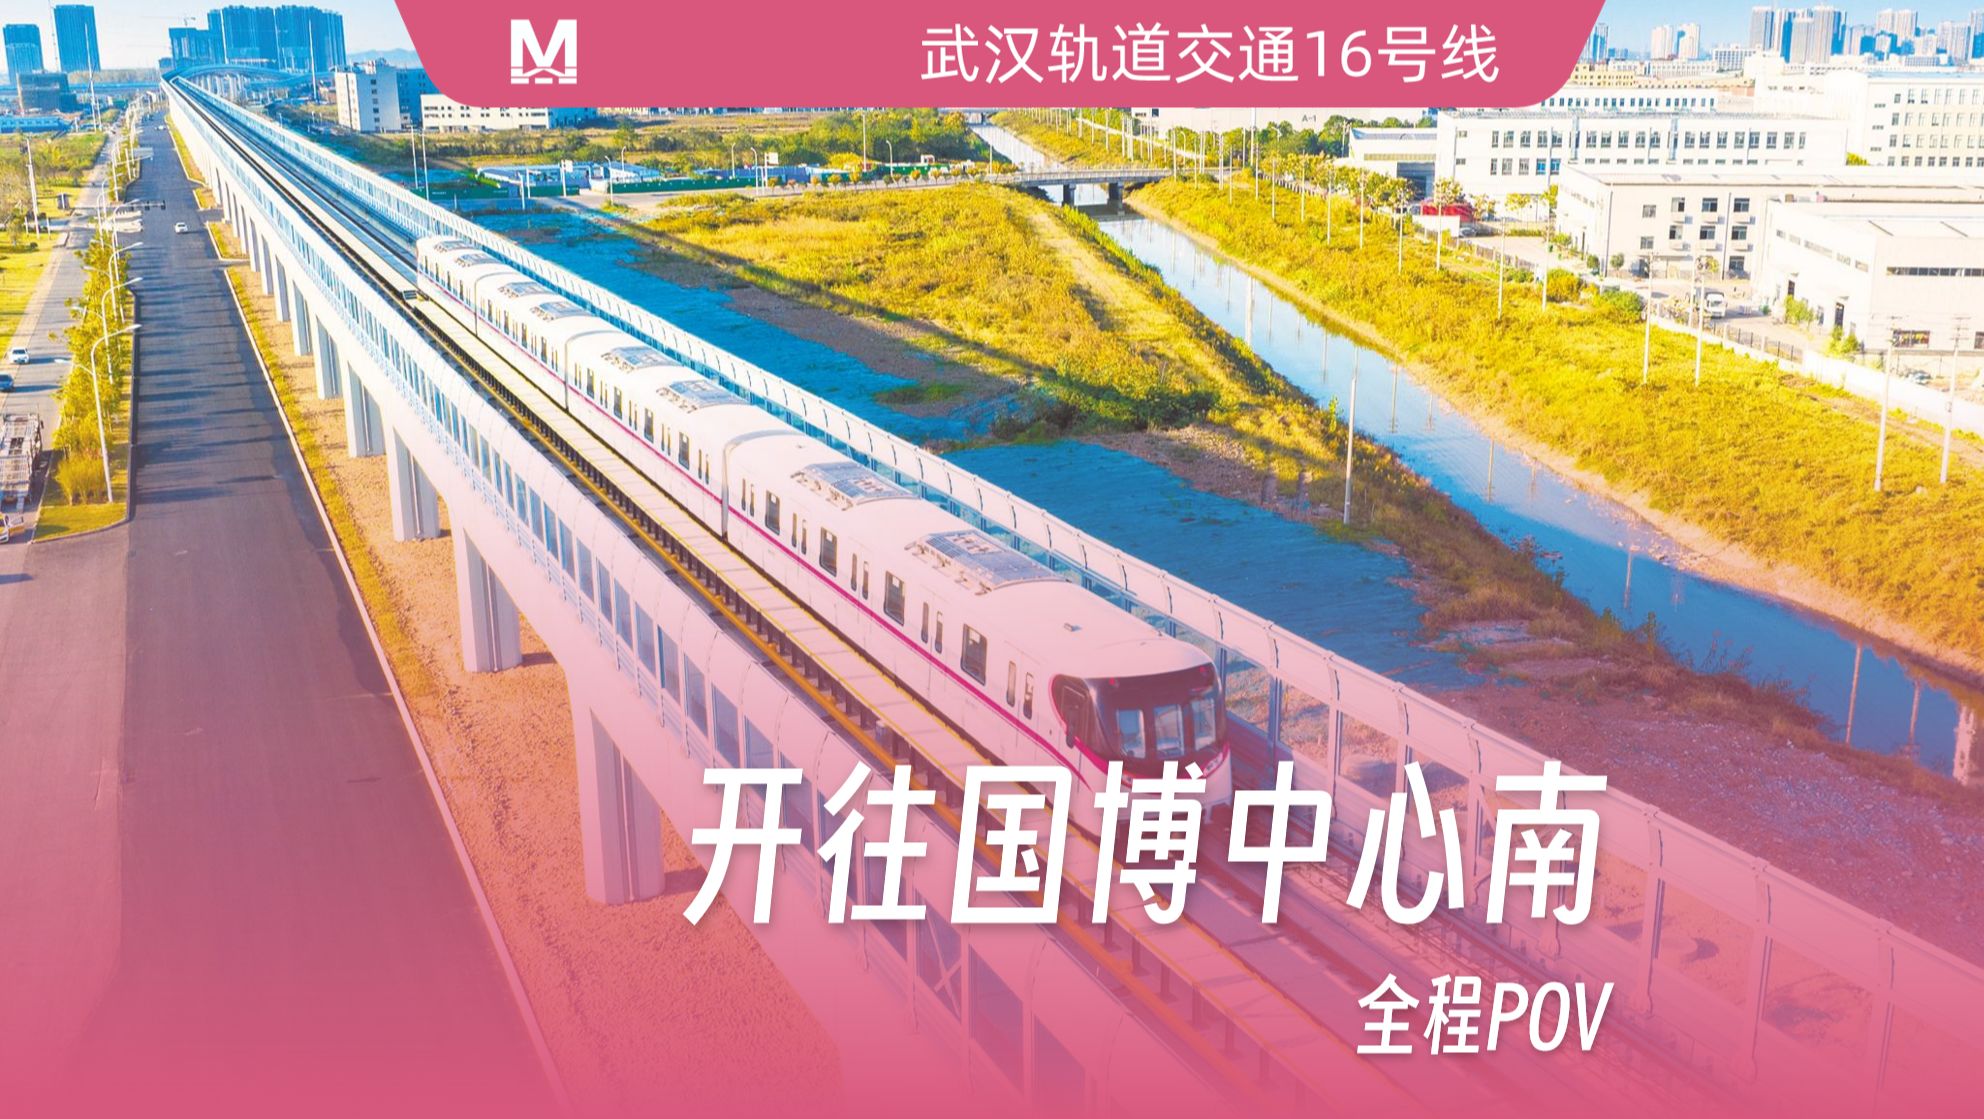 武汉地铁汉南线图片